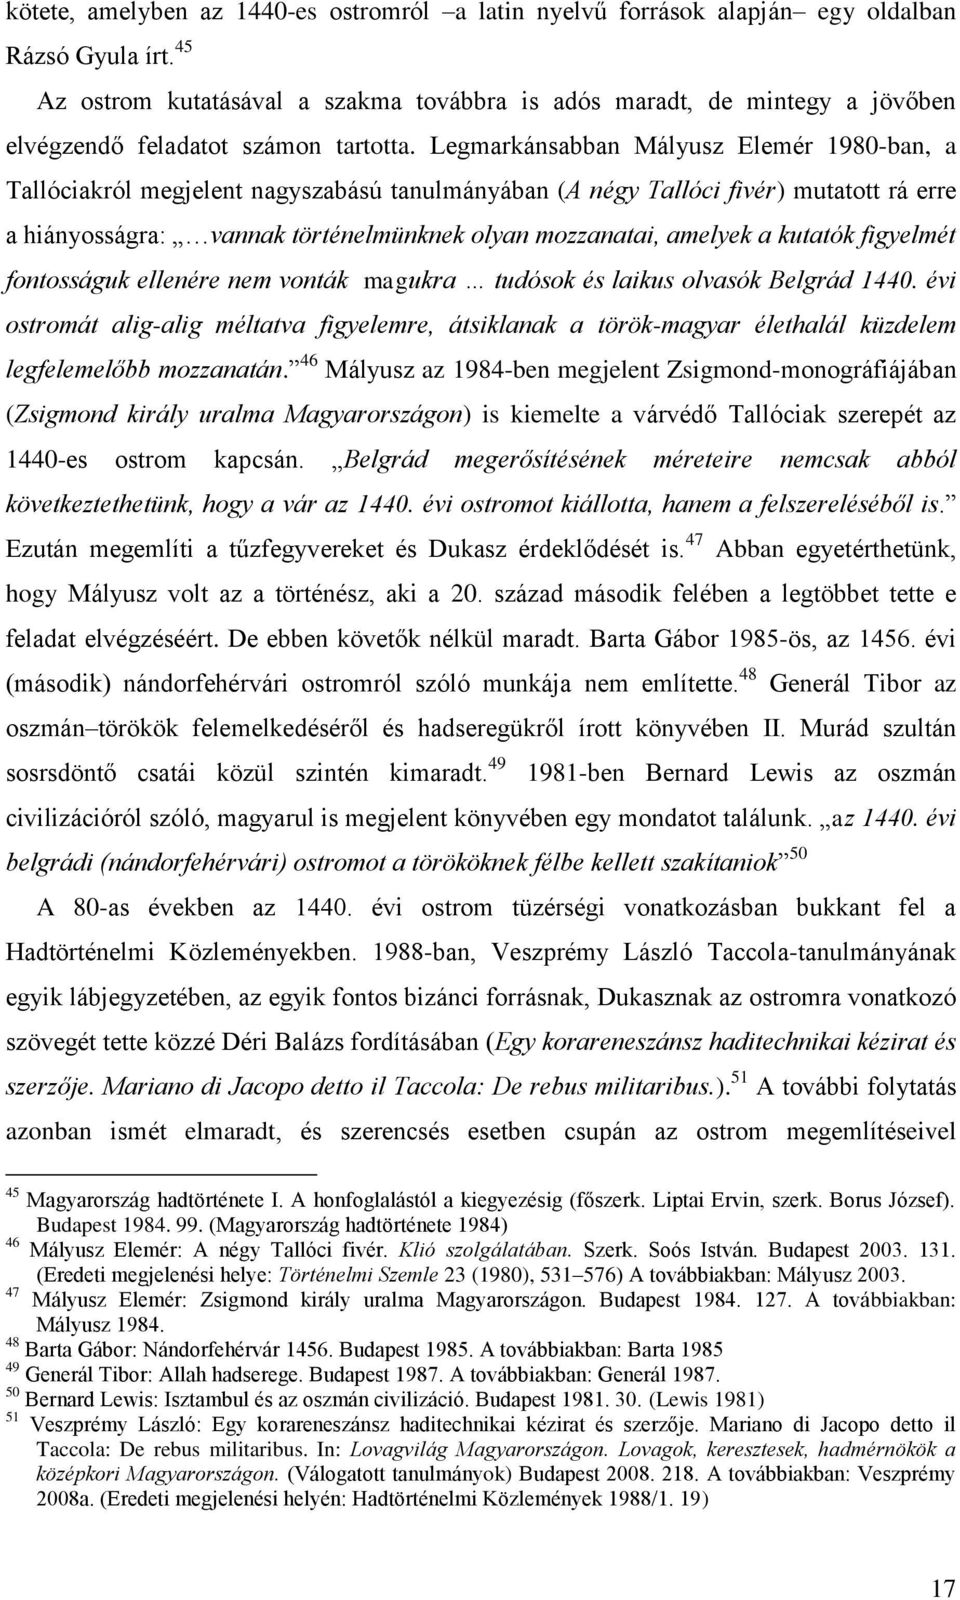 Legmarkánsabban Mályusz Elemér 1980-ban, a Tallóciakról megjelent nagyszabású tanulmányában (A négy Tallóci fivér) mutatott rá erre a hiányosságra: vannak történelmünknek olyan mozzanatai, amelyek a